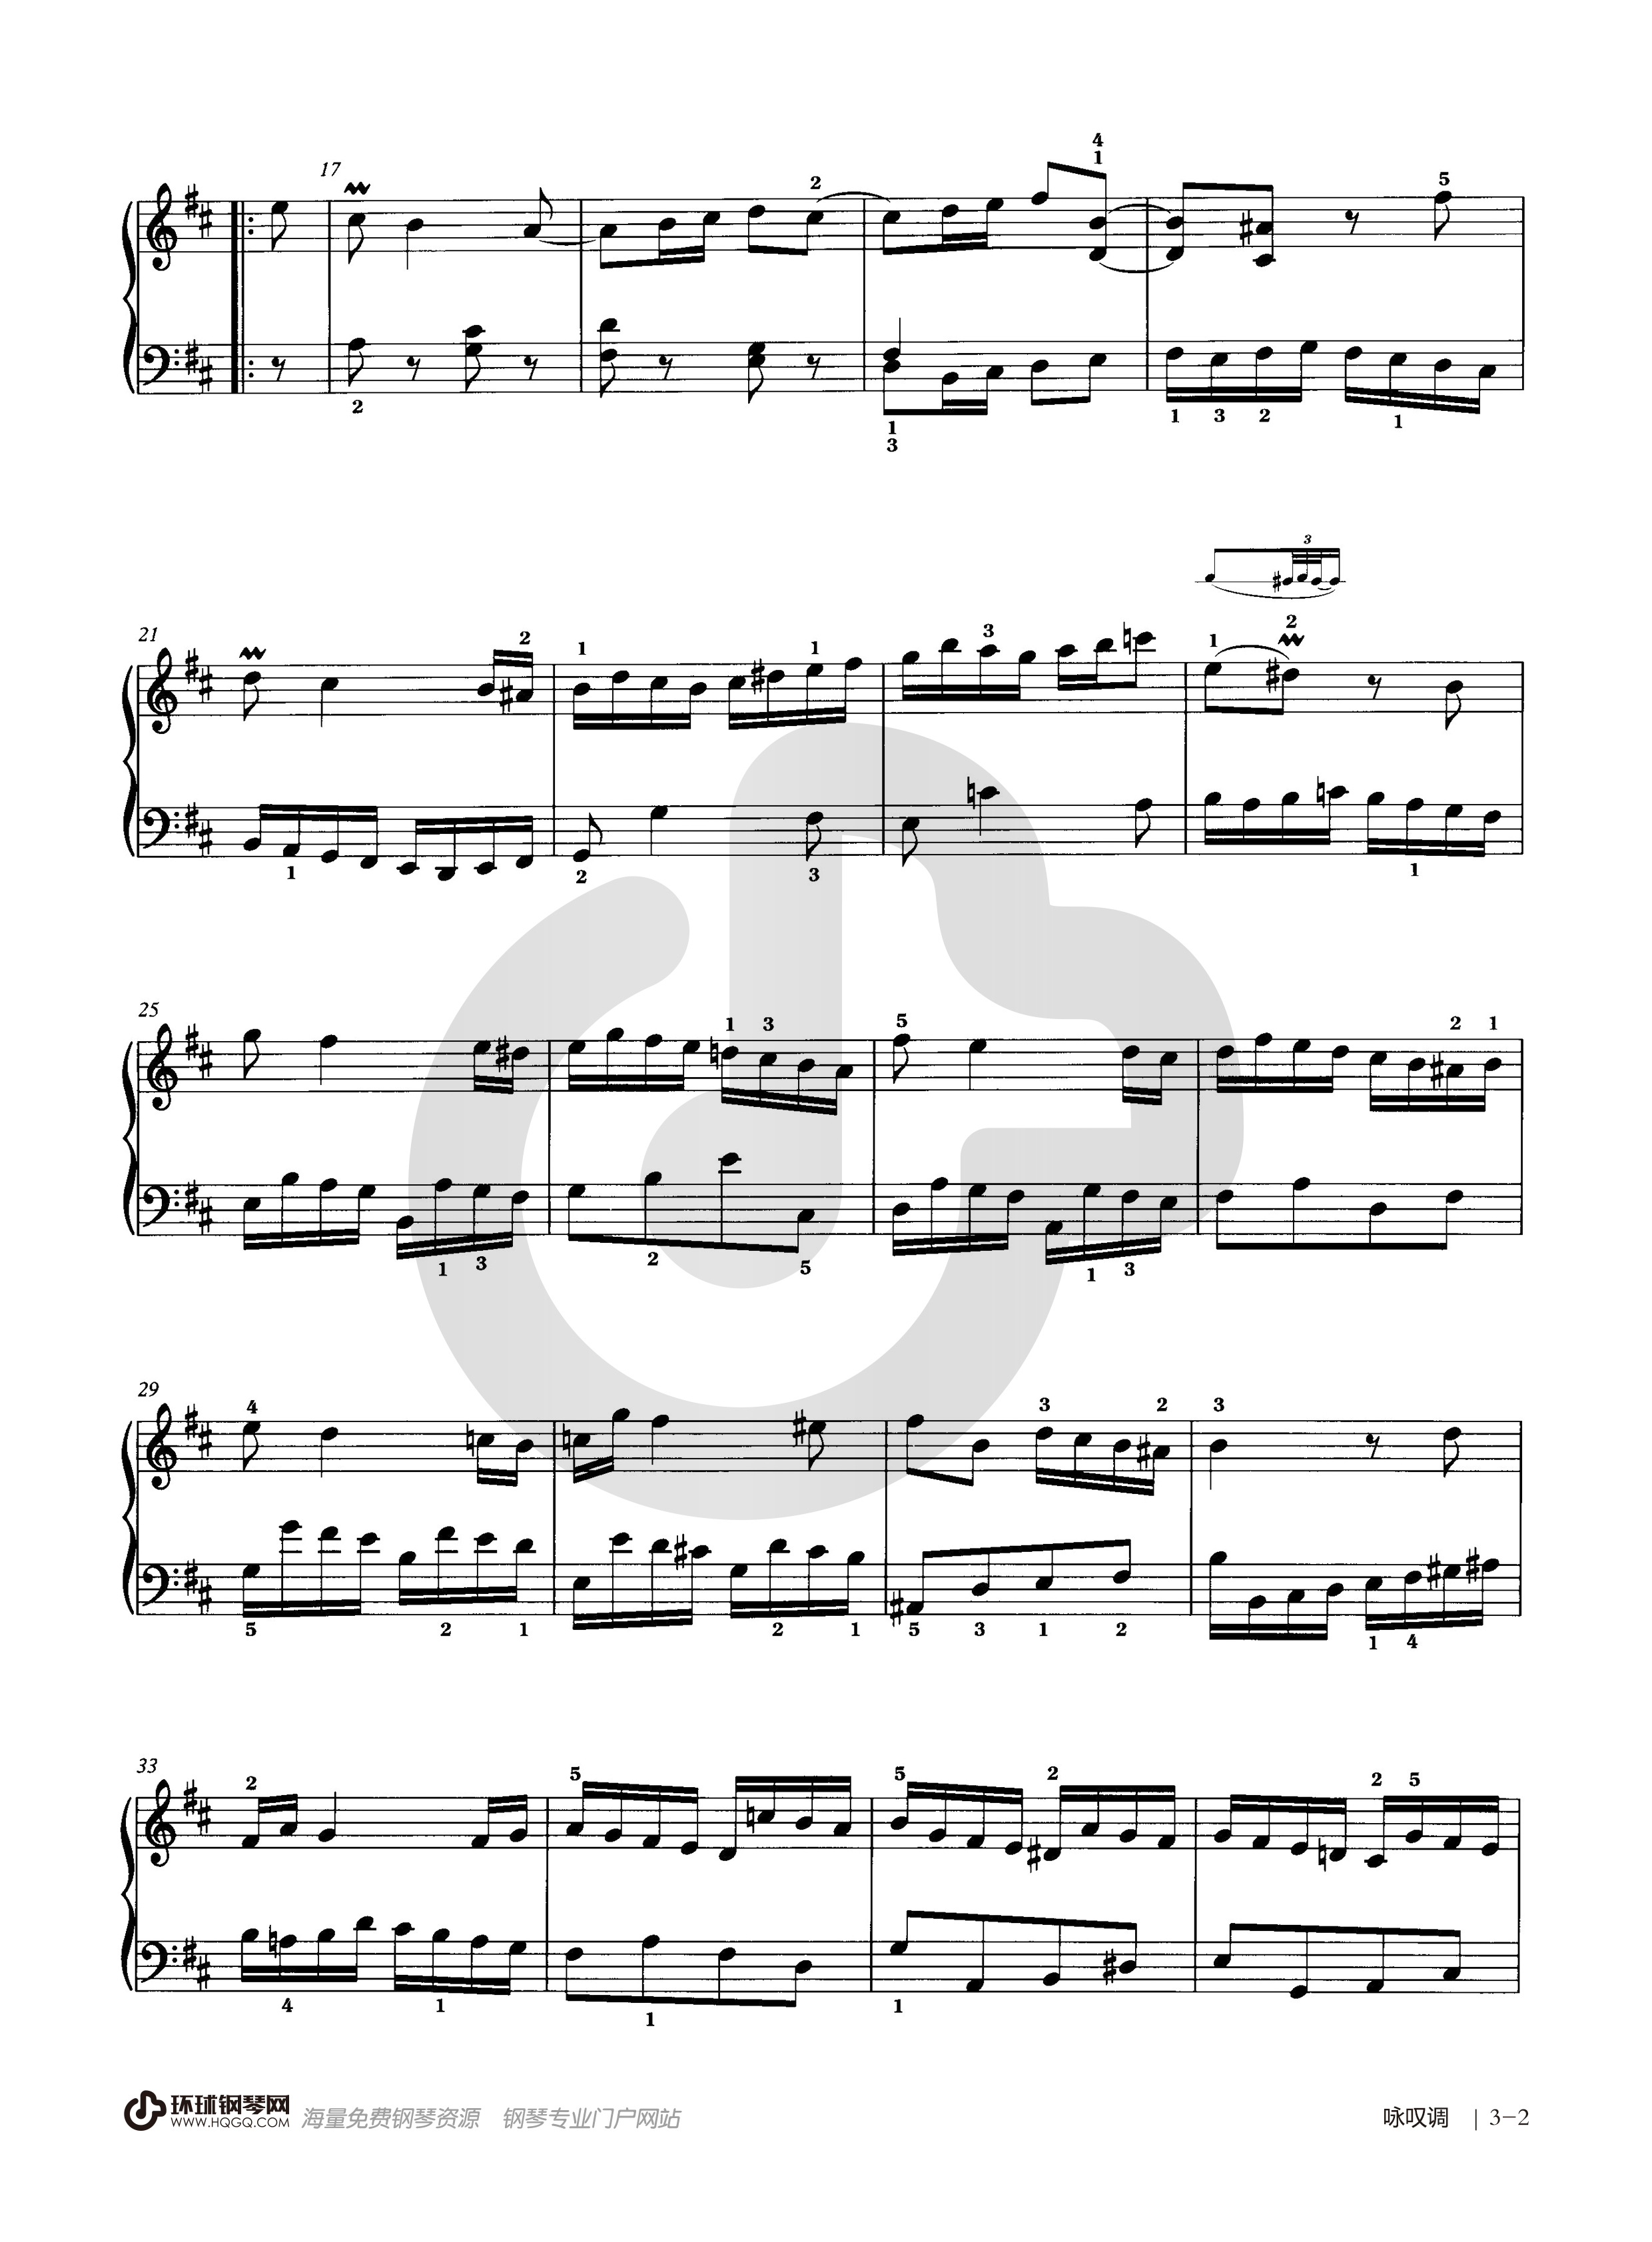 钢琴五级考试曲目谱子图片